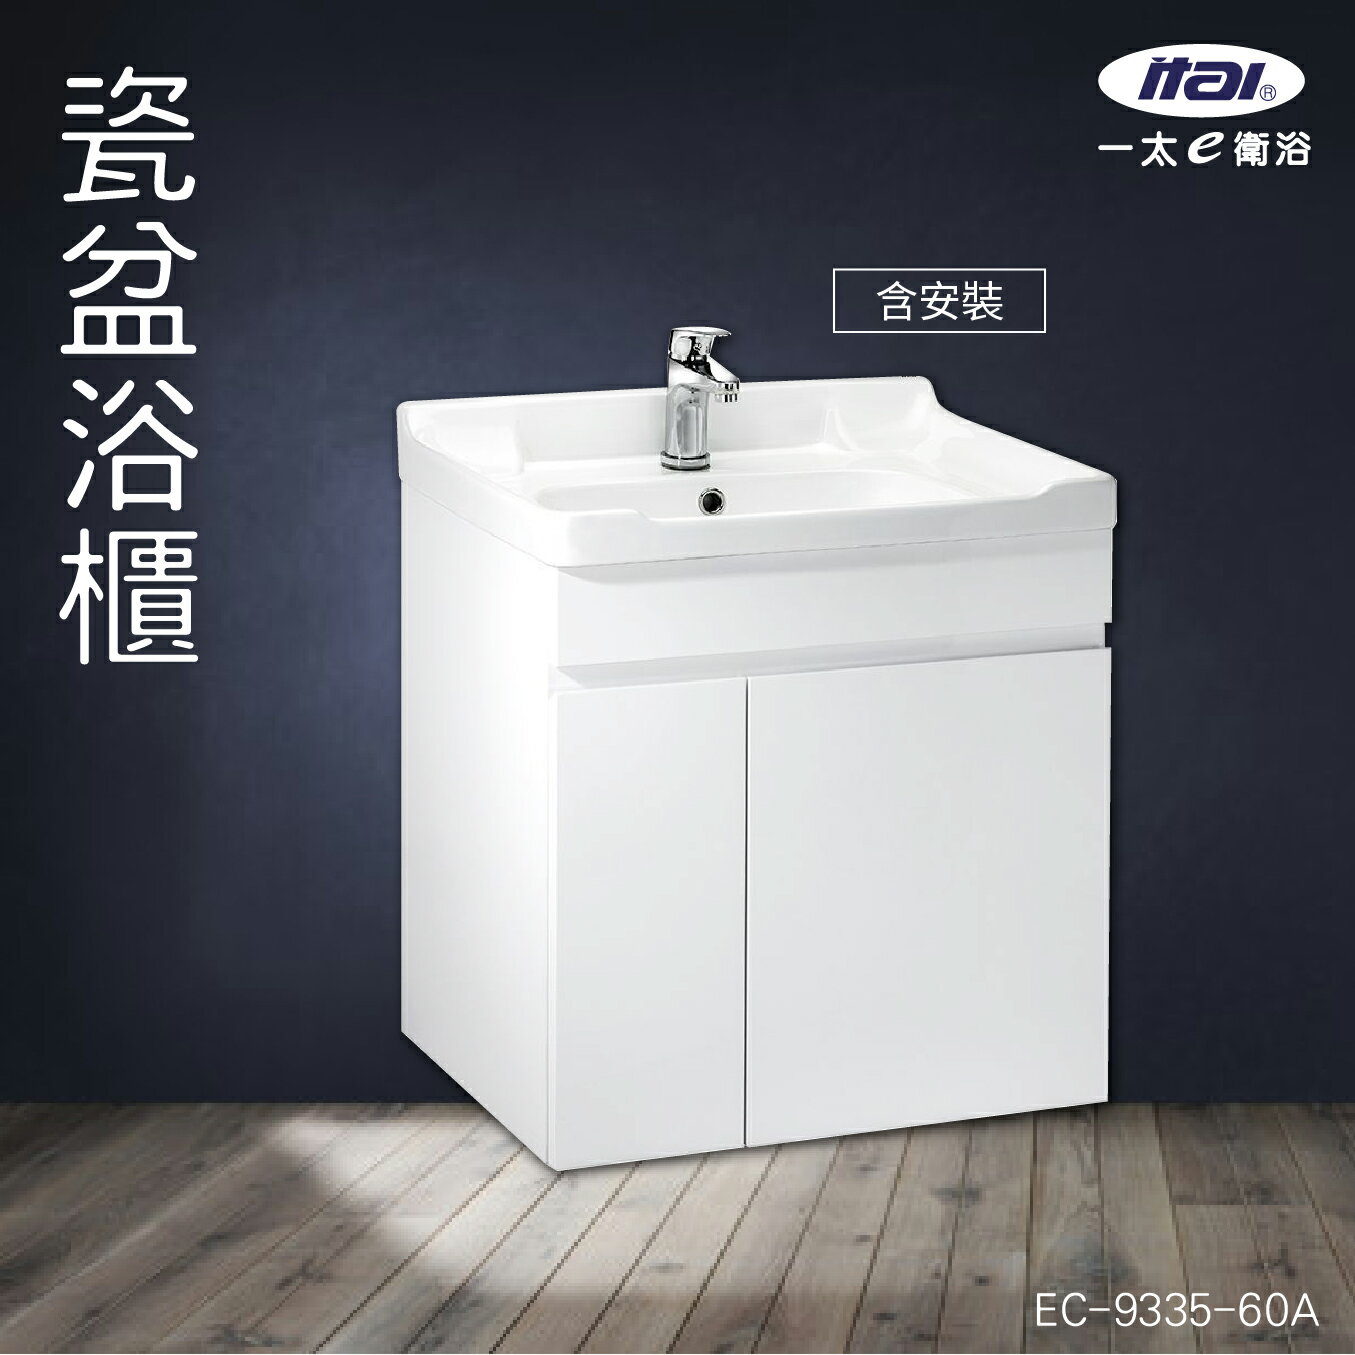 (含安裝)台灣製造 ITAI 瓷盆浴櫃 EC-9335-60A 浴室洗手台 緩衝設計 櫃子 陶瓷抗汙 純白 洗臉盆 抗汙釉